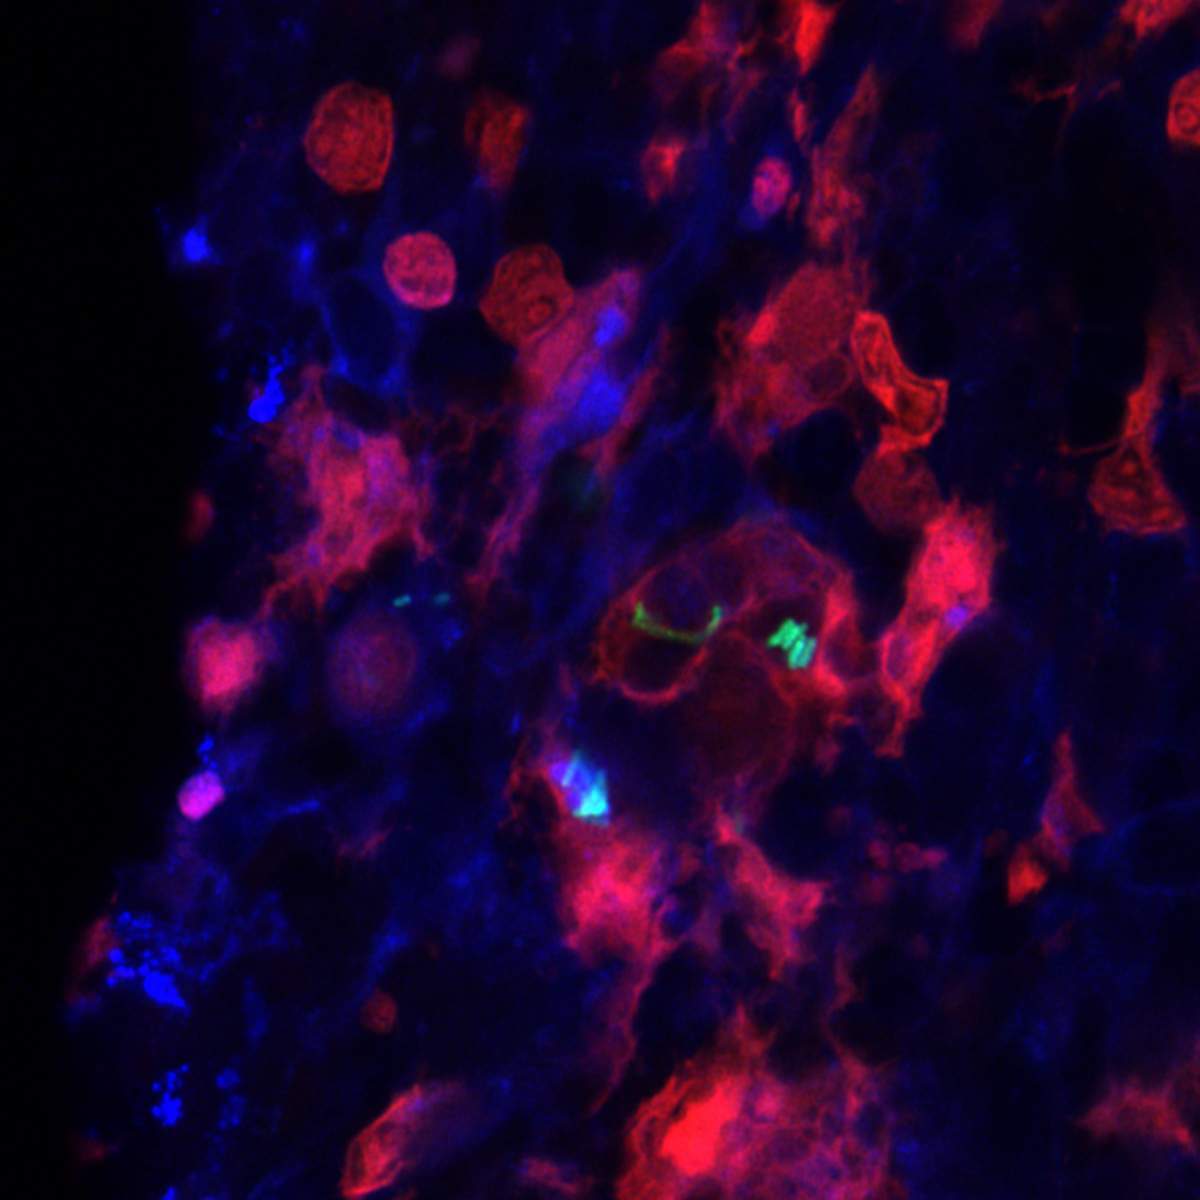 צילום מיקרוסקופי פלואורסצנטי של חיידקי סלמונלה (ירוק) שנבלעו על-ידי תאים מקרופאגים (אדום) שמקורם בטחול העכבר (בכחול – גרעיני התאים)